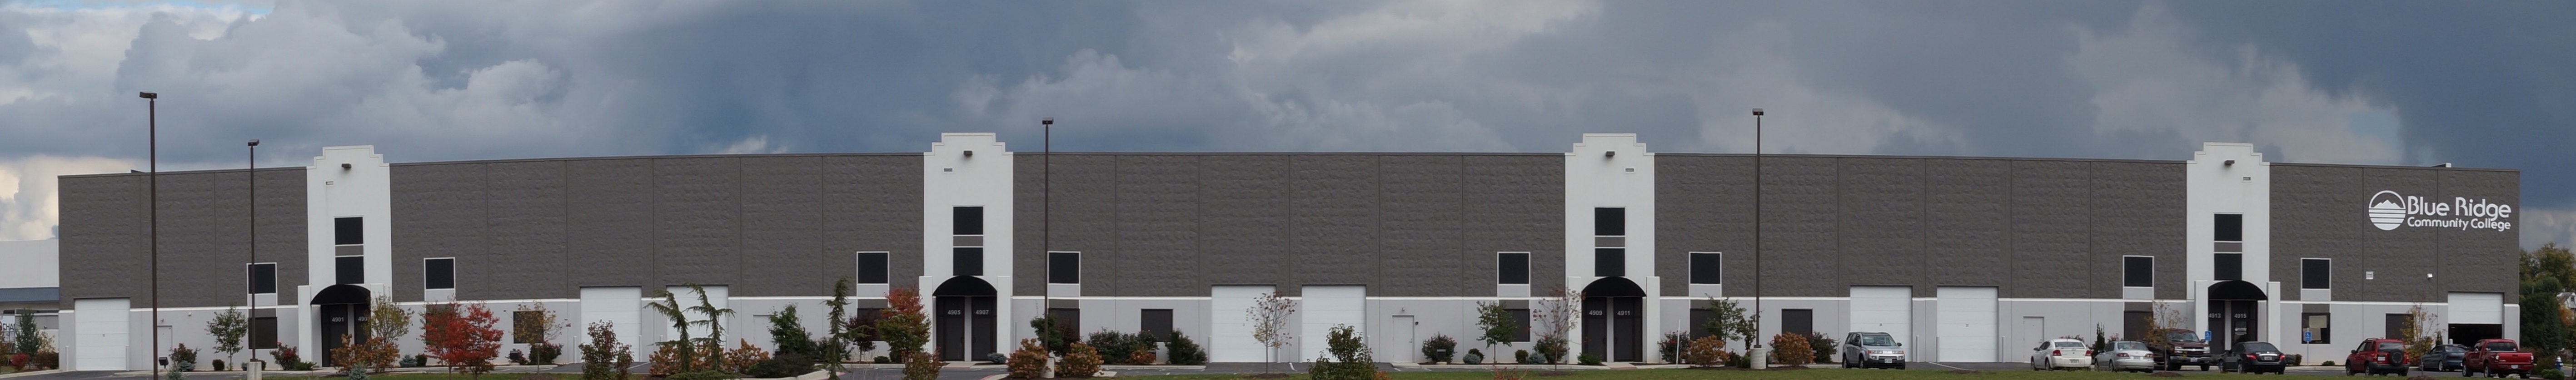 Flex Warehouse Condo 2 Exterior (visible from I-81)